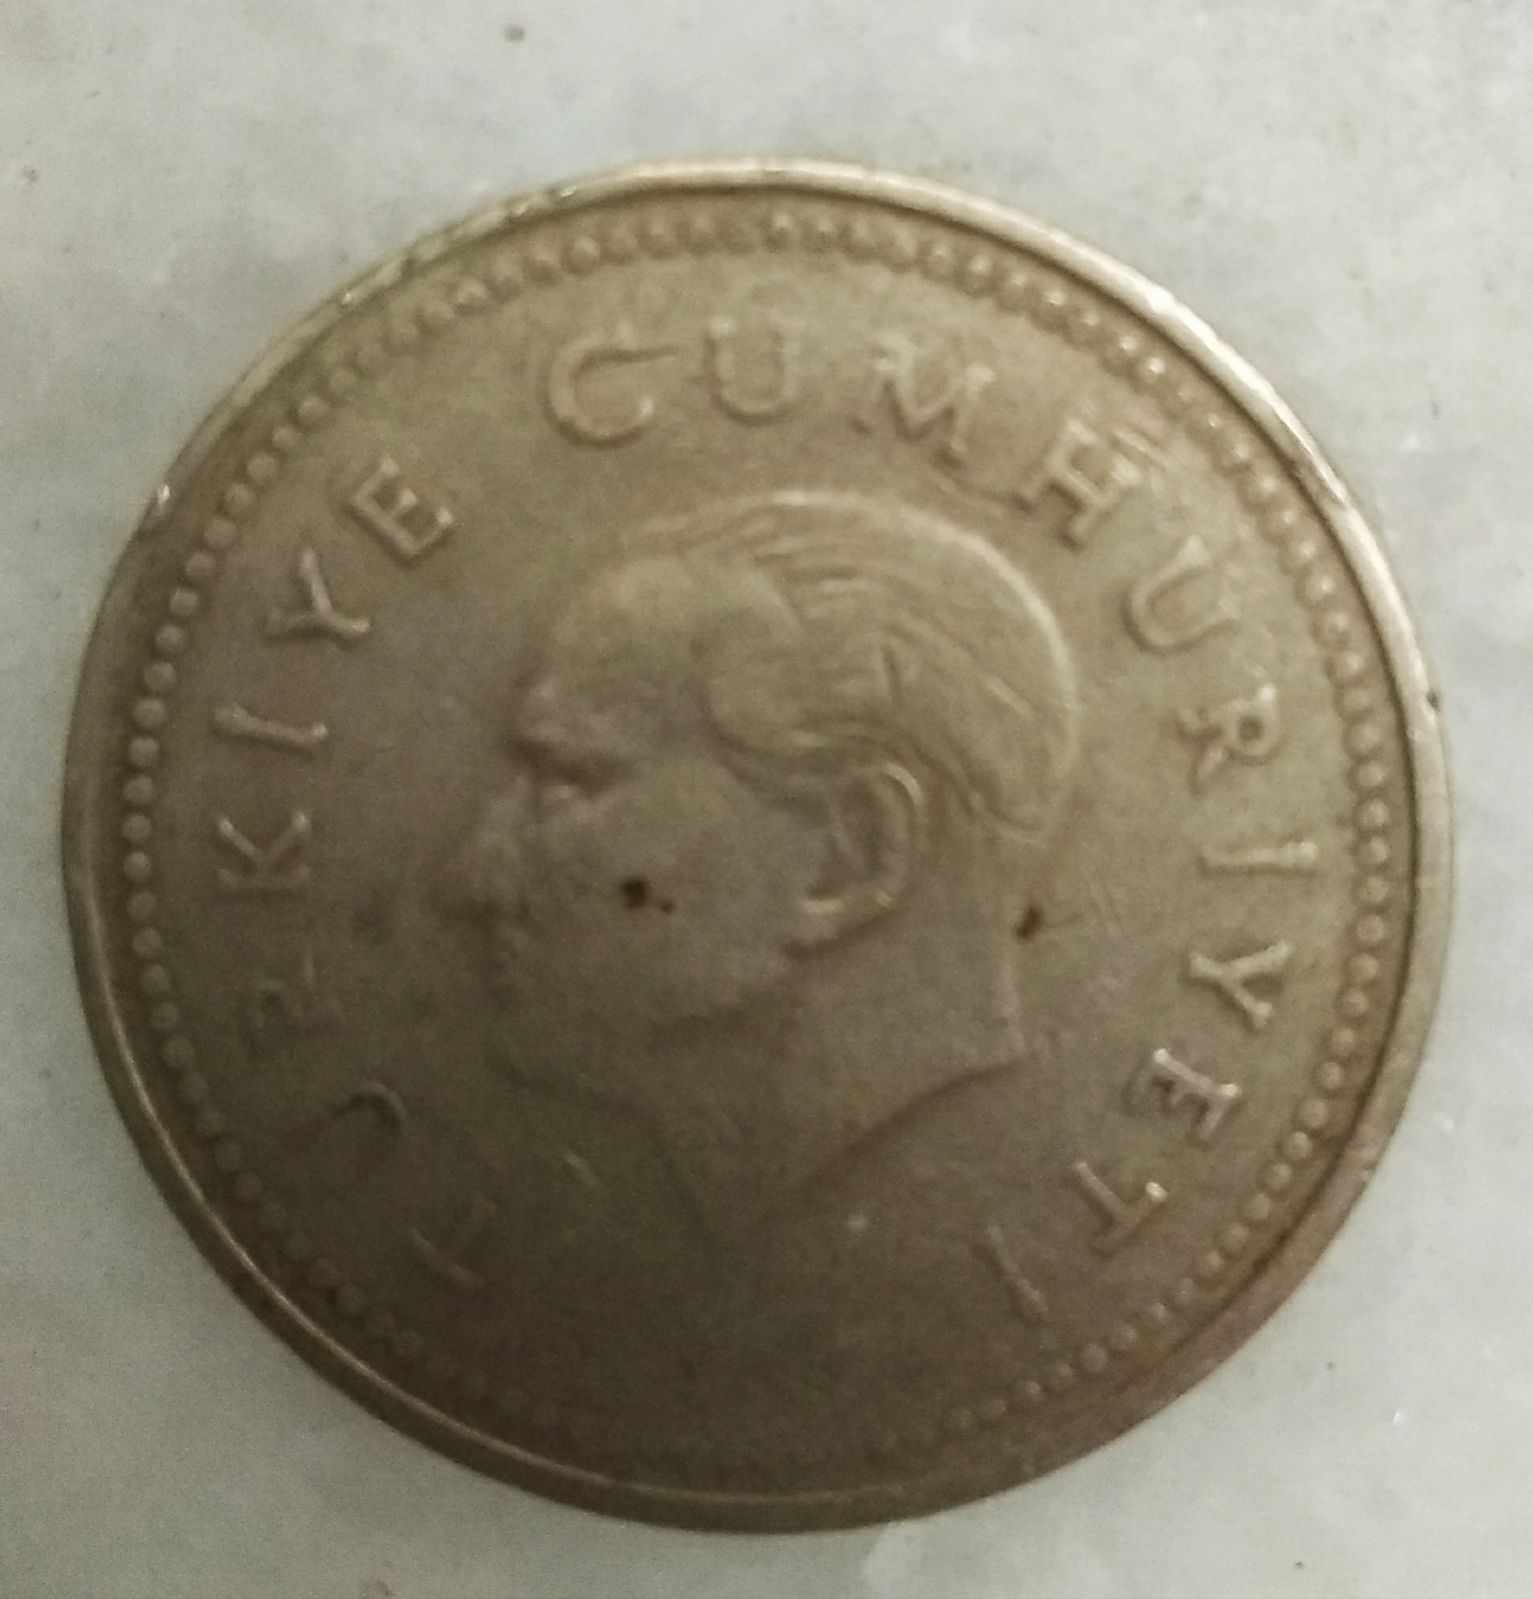 5000 Lira 1994 Ön Yüz